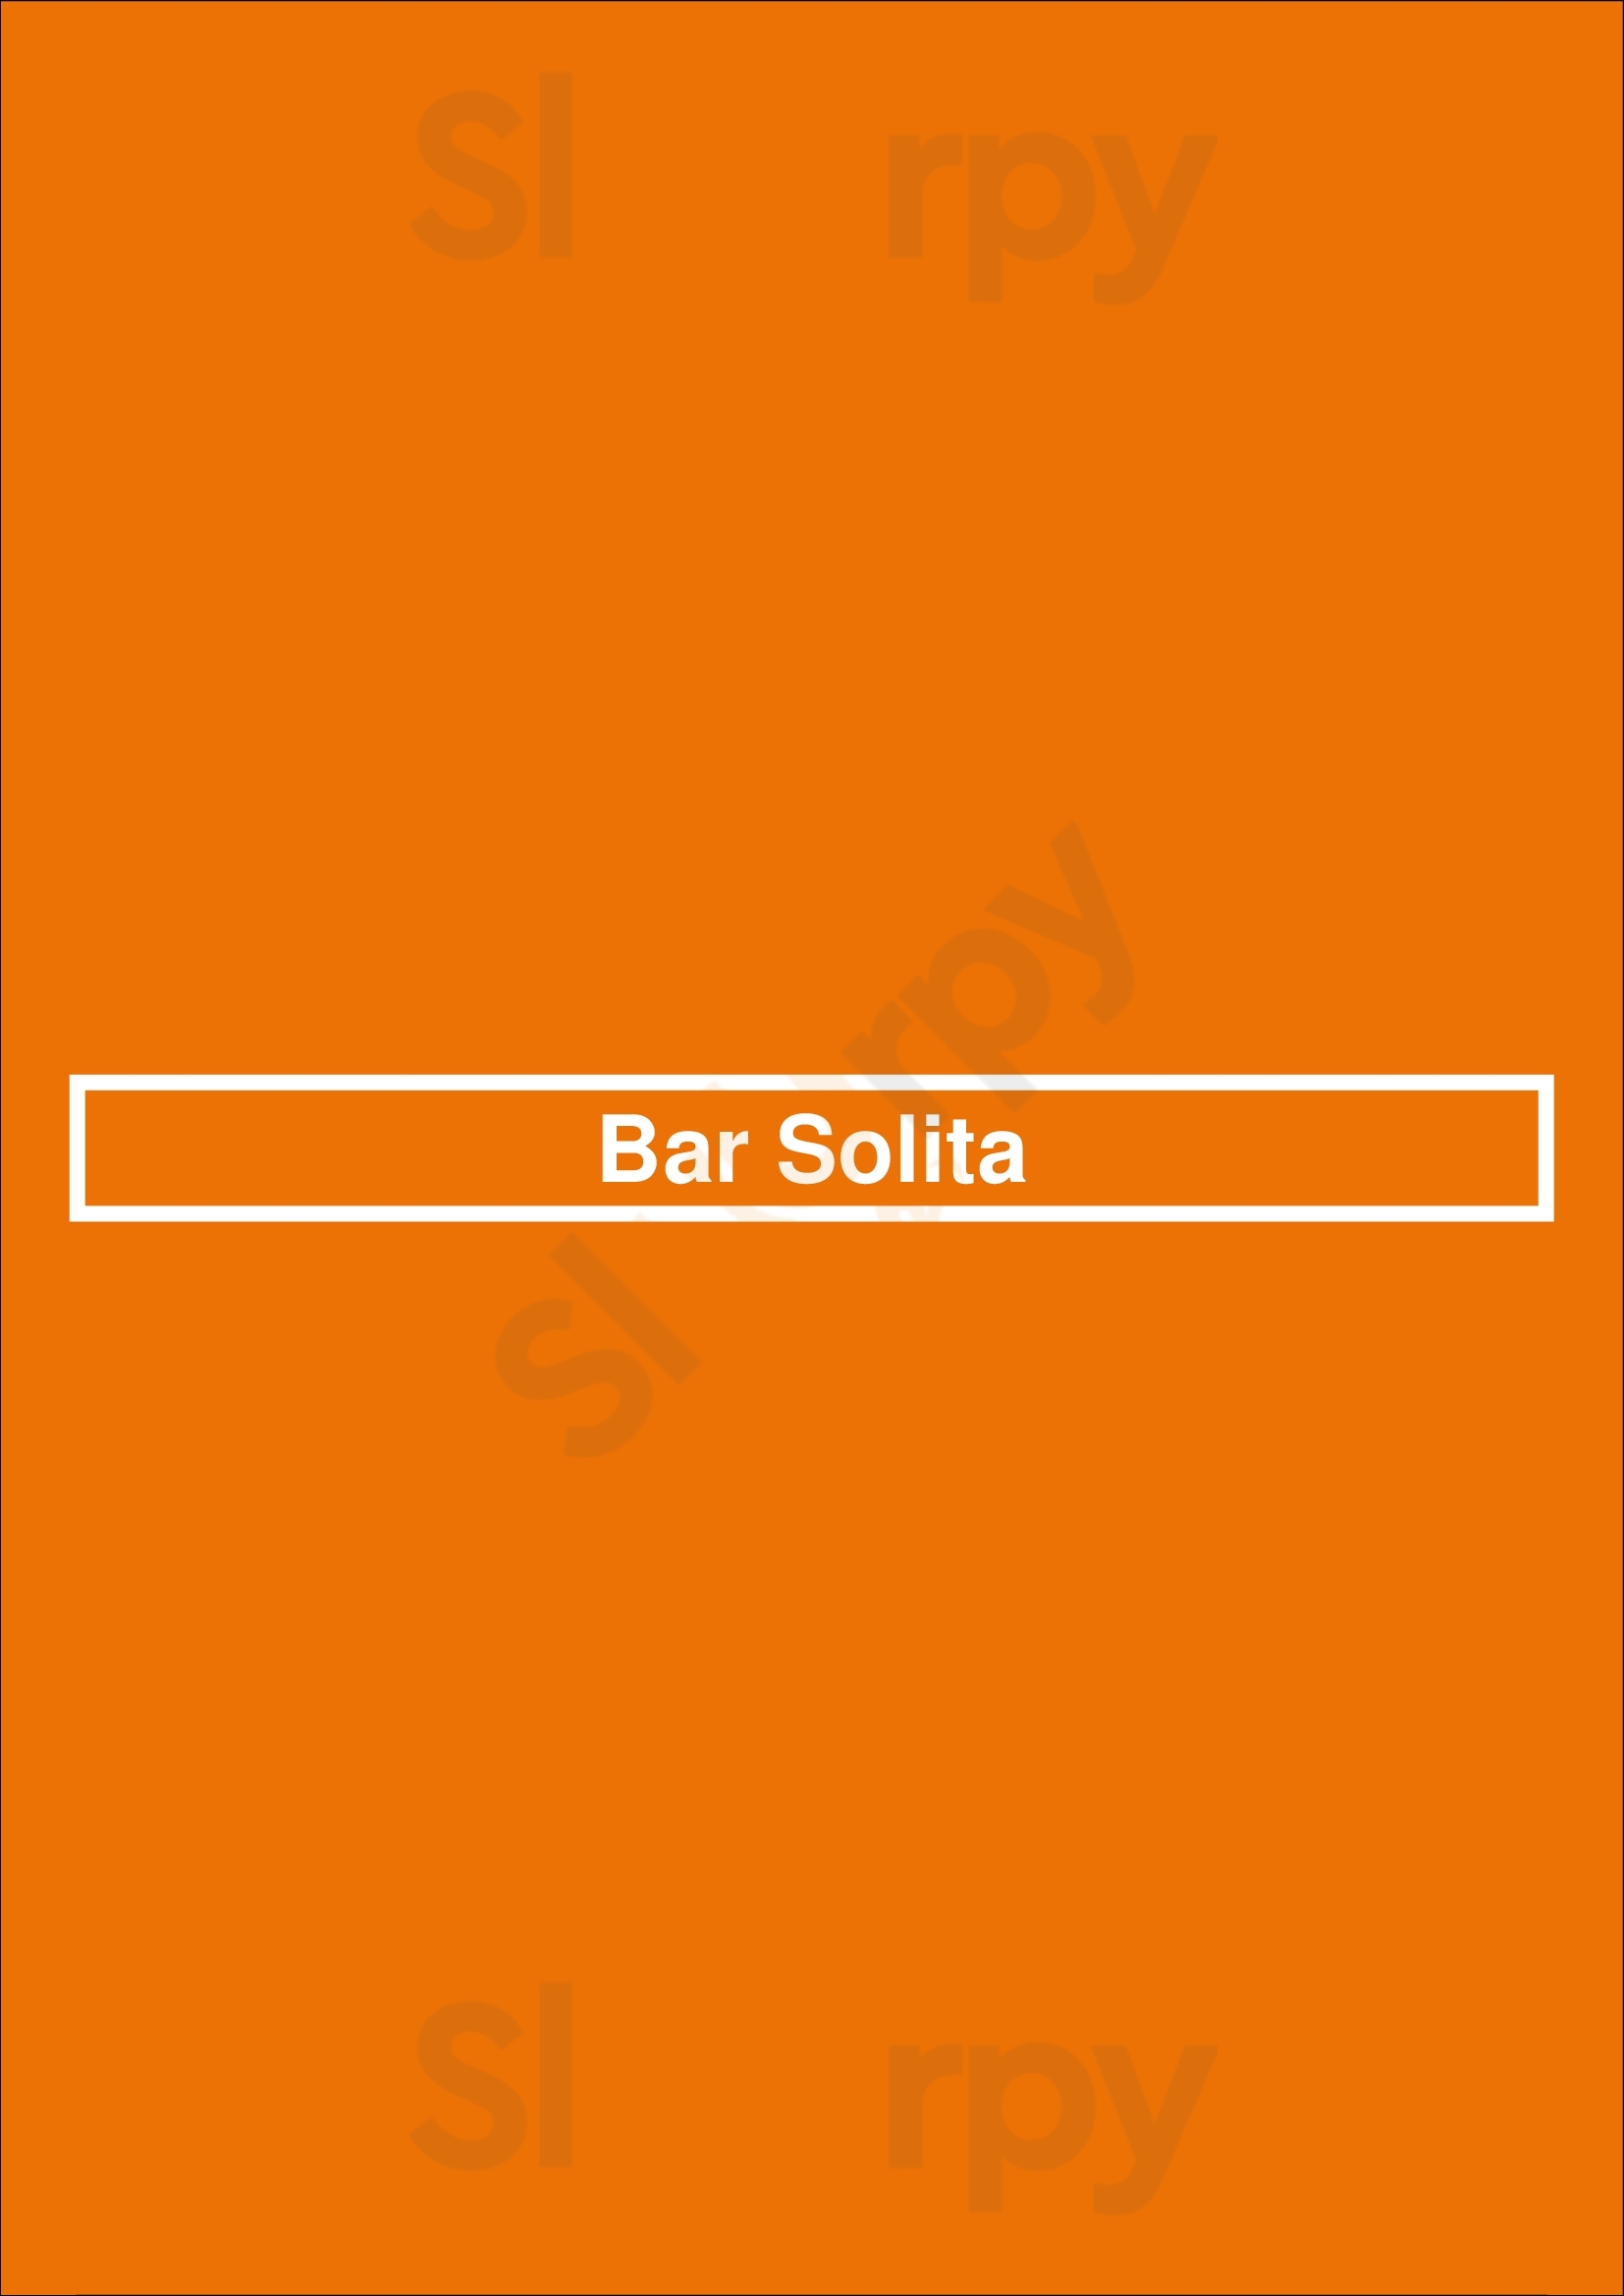 Bar Solita Richmond Menu - 1